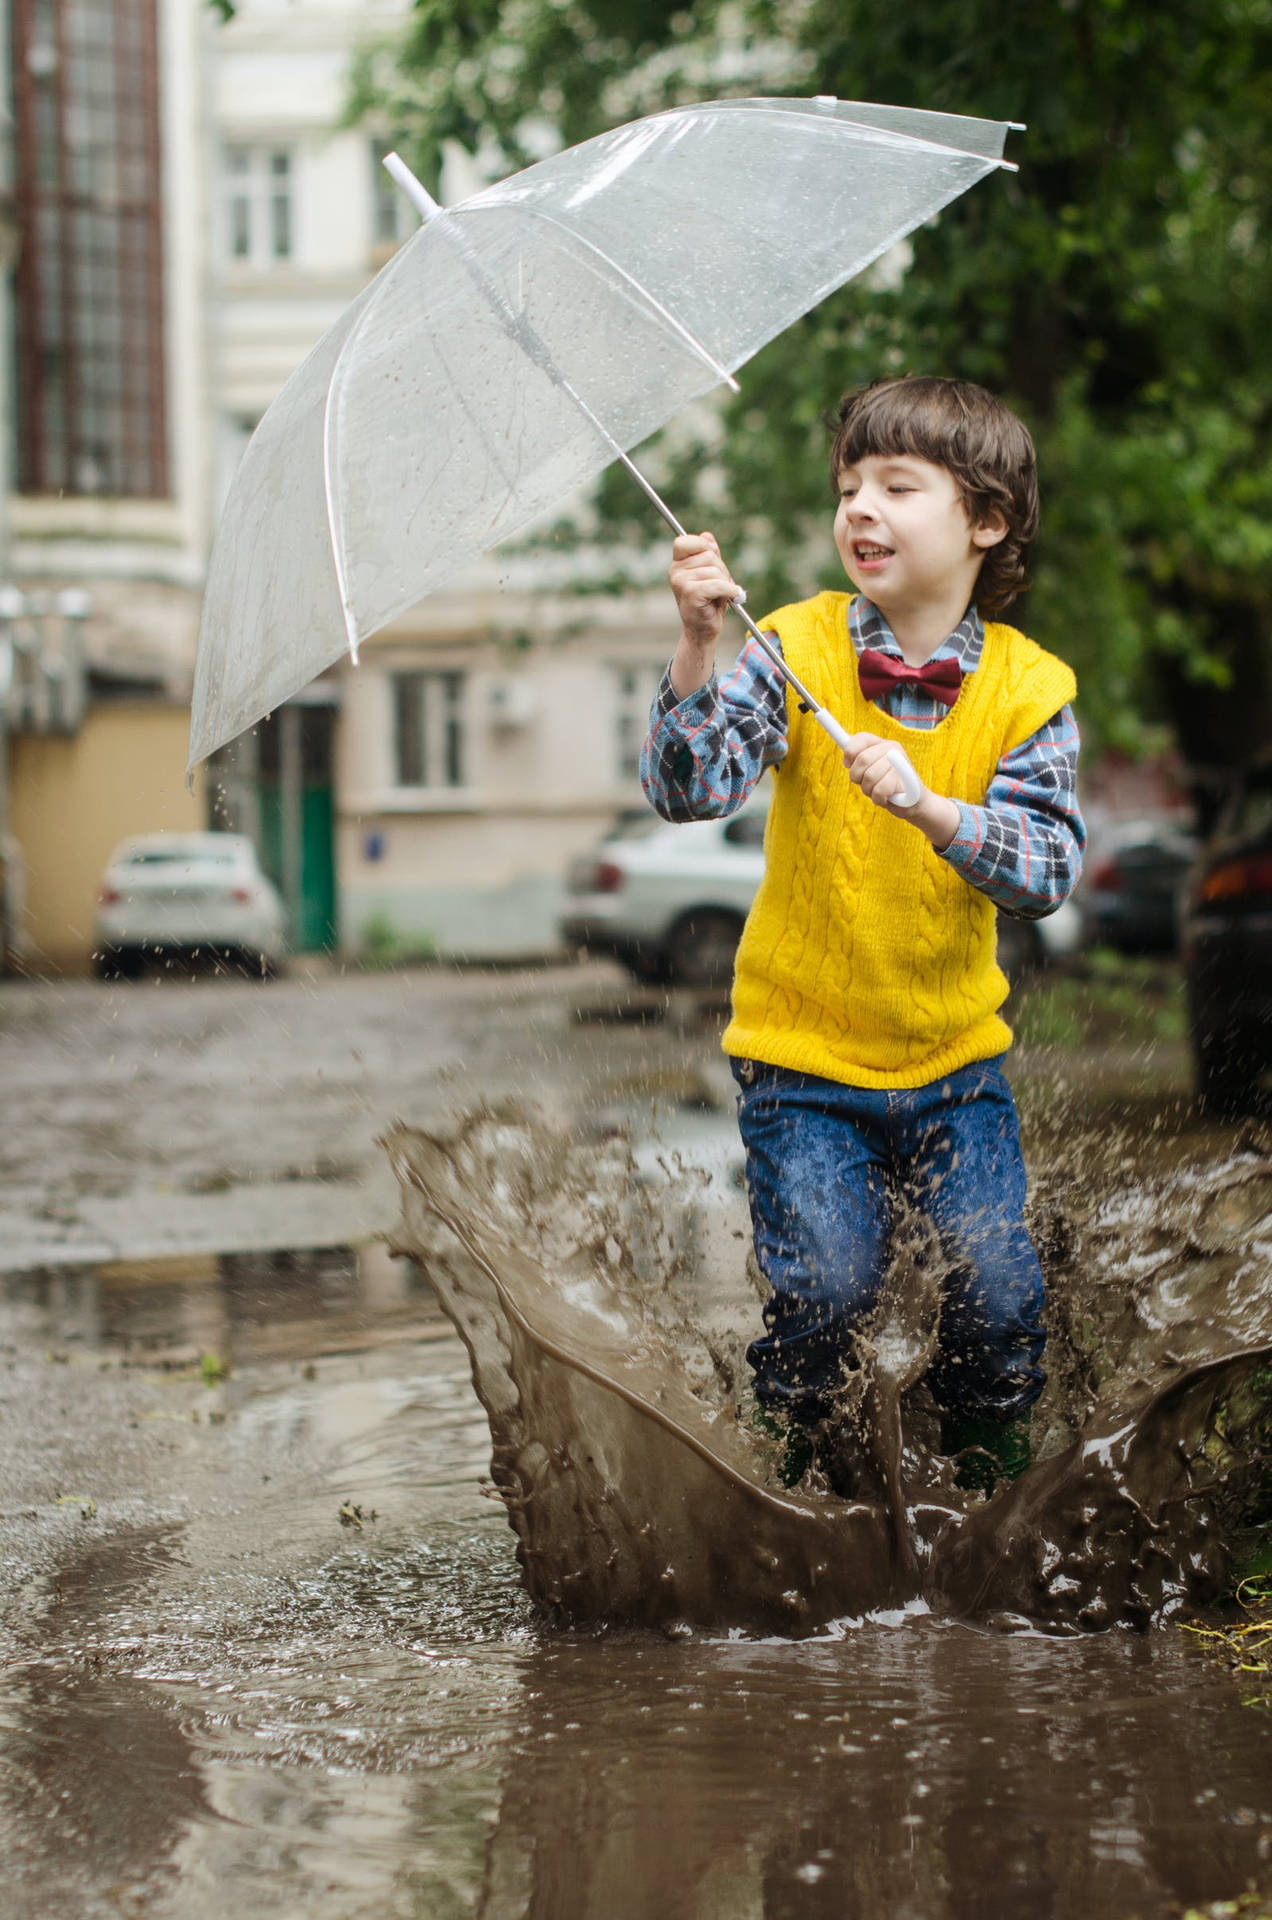 Jungespielt Draußen Während Es Regnet. Wallpaper